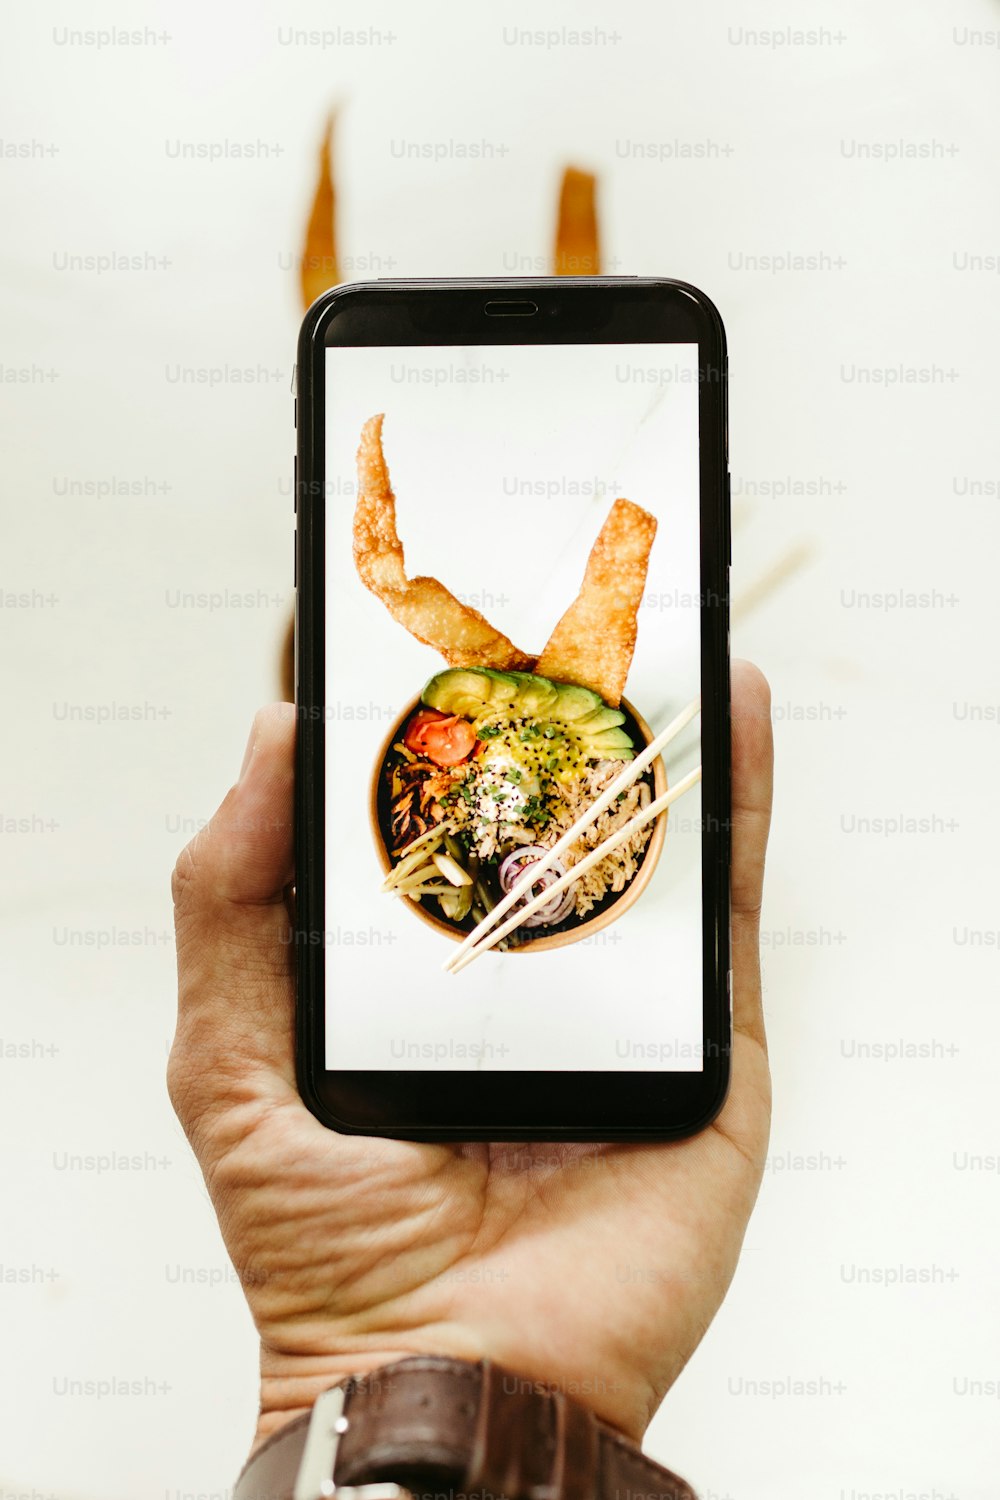 Una persona sosteniendo un teléfono inteligente con una imagen de un tazón de comida en él